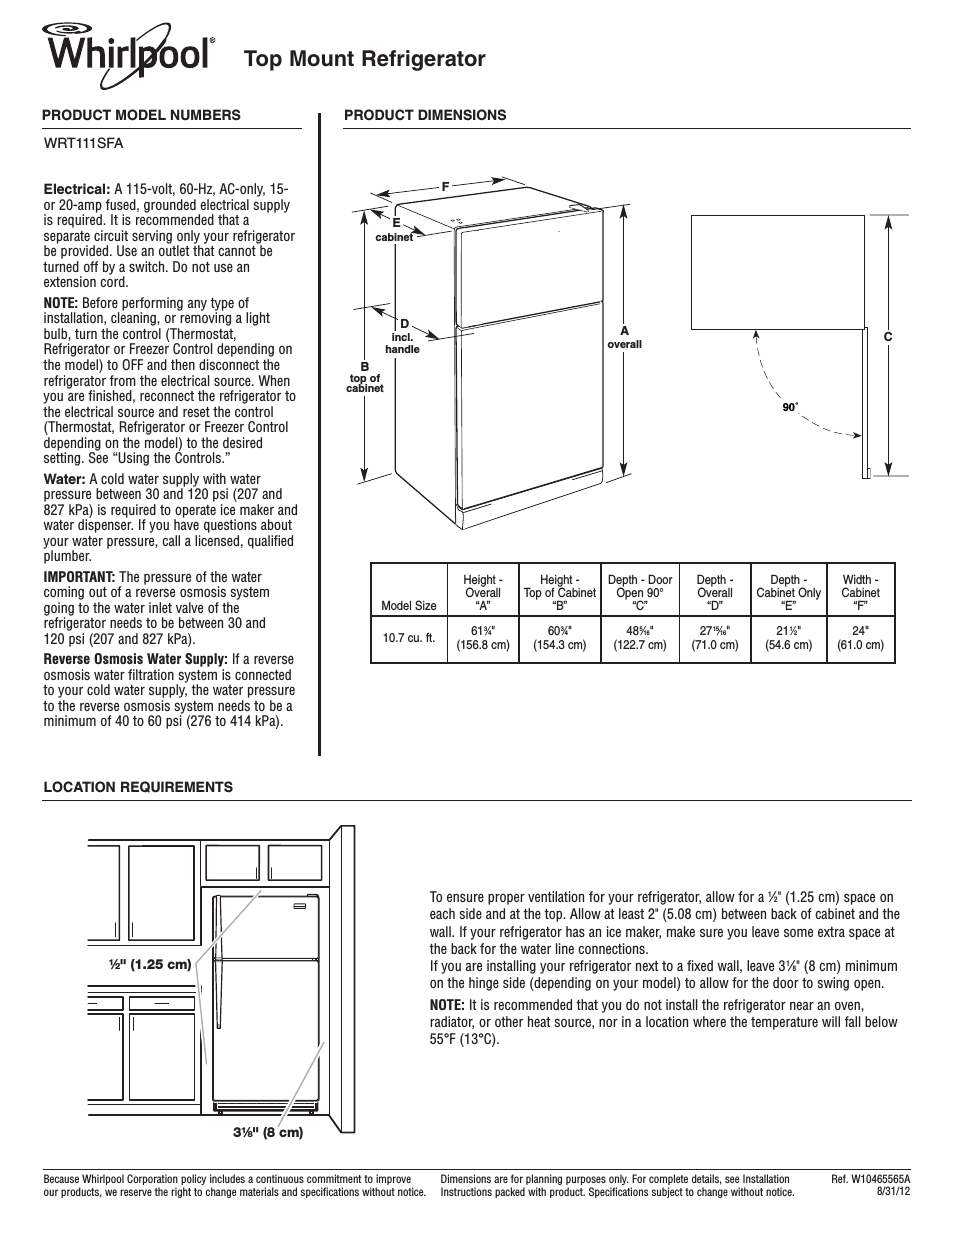 WRT111SFAB Dimension Guide